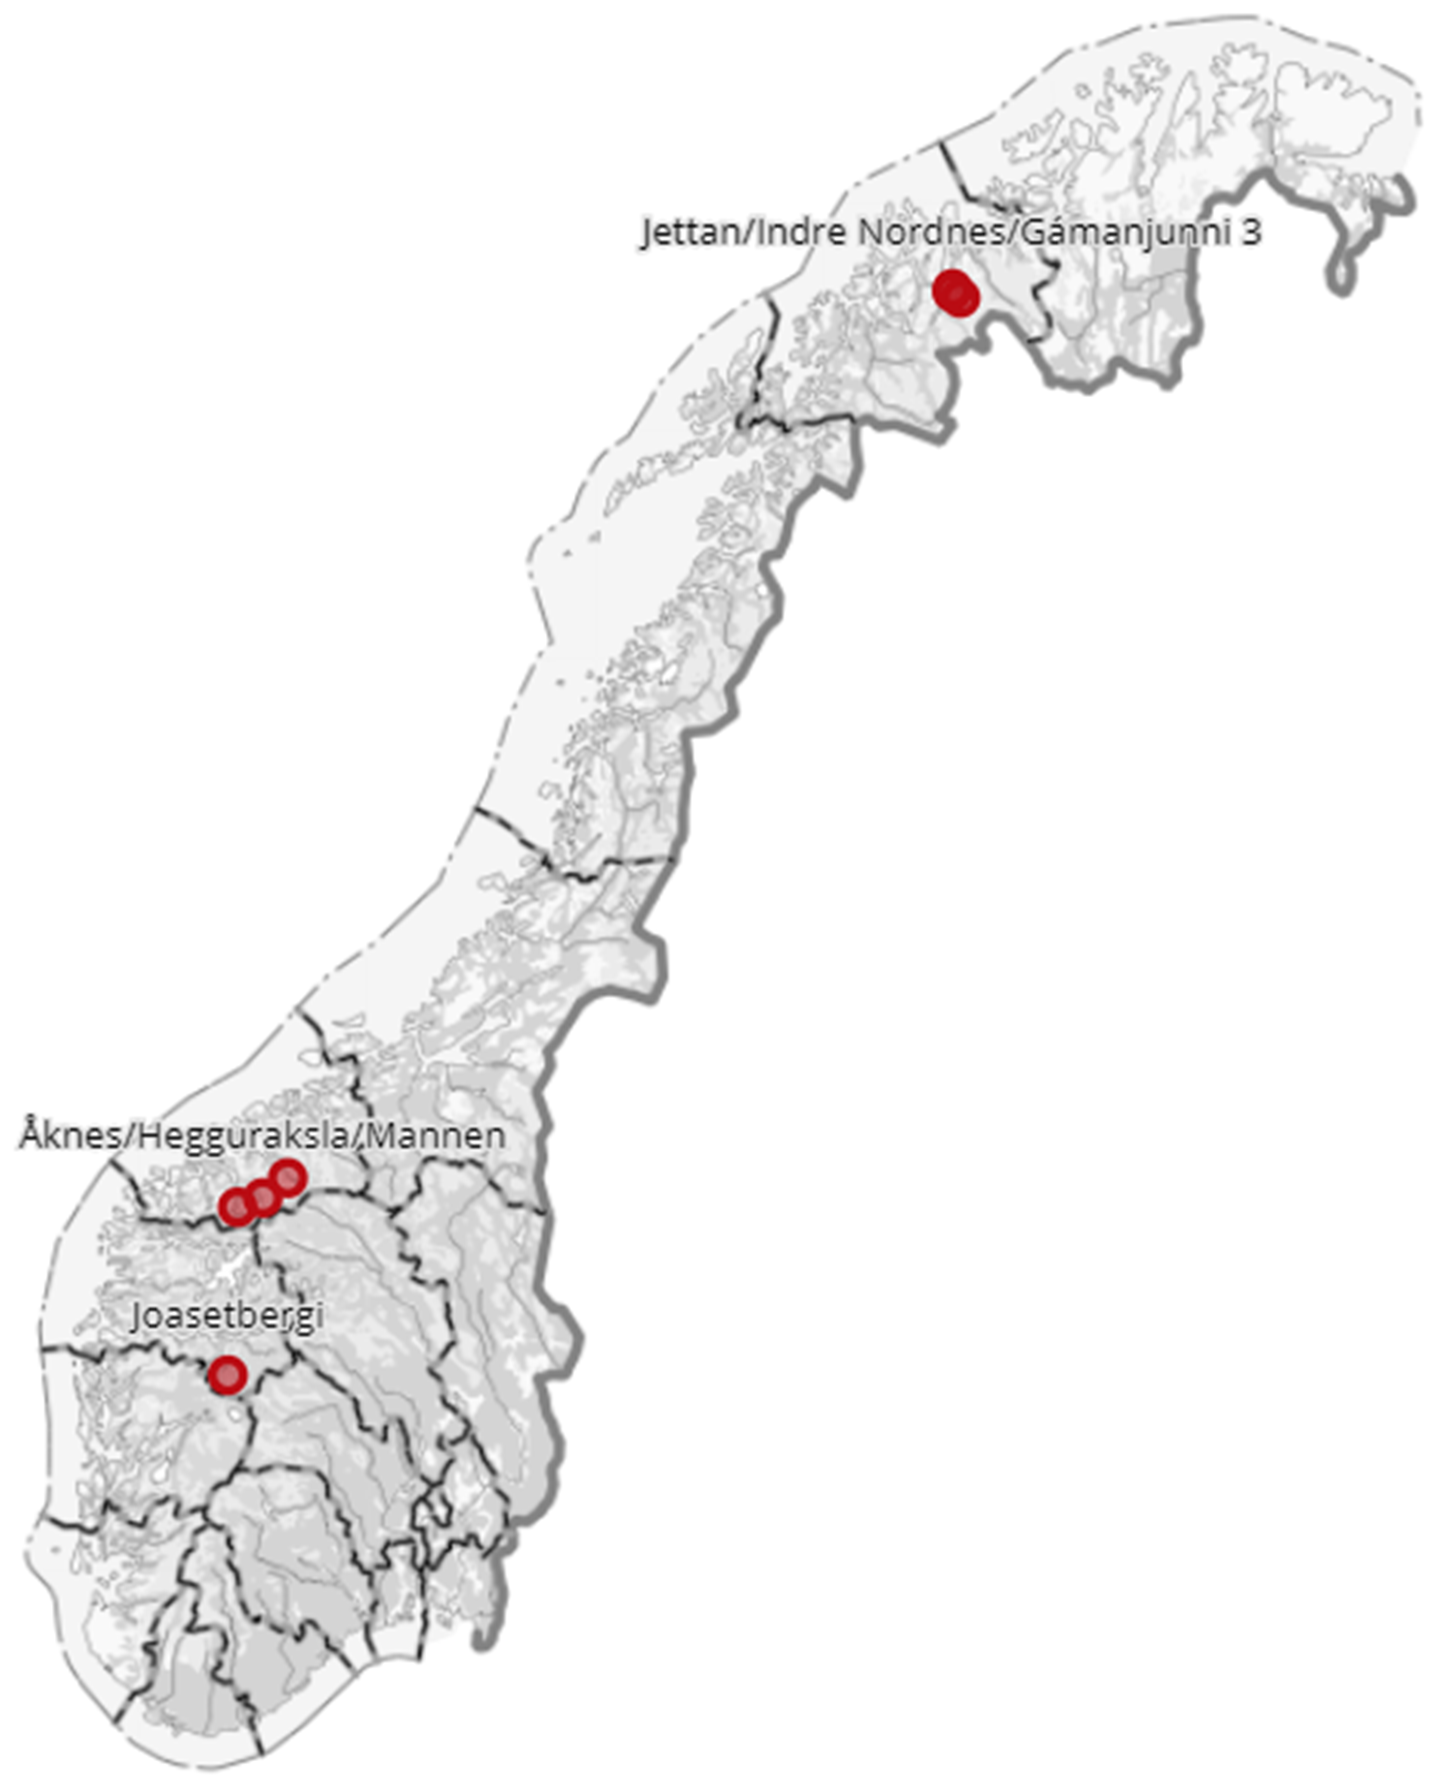 Kartbilde over Norge med høyrisikoobjekt markert med prikk.